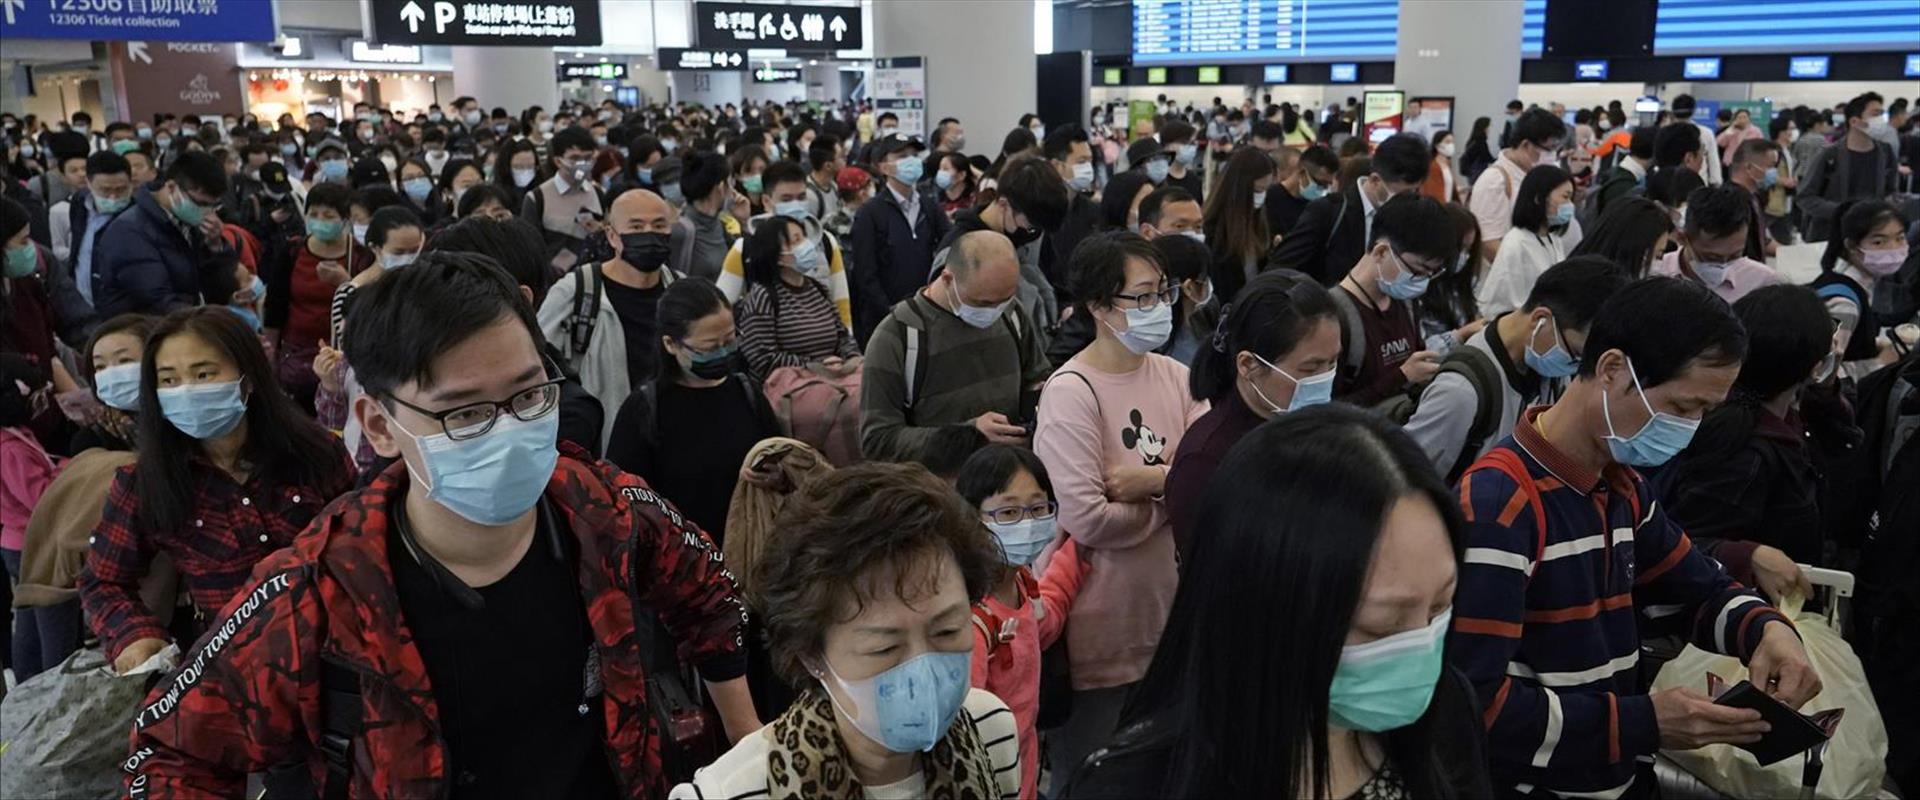 נוסעים לובשים מסכות הגנה בתחנת רכבת בהונג קונג